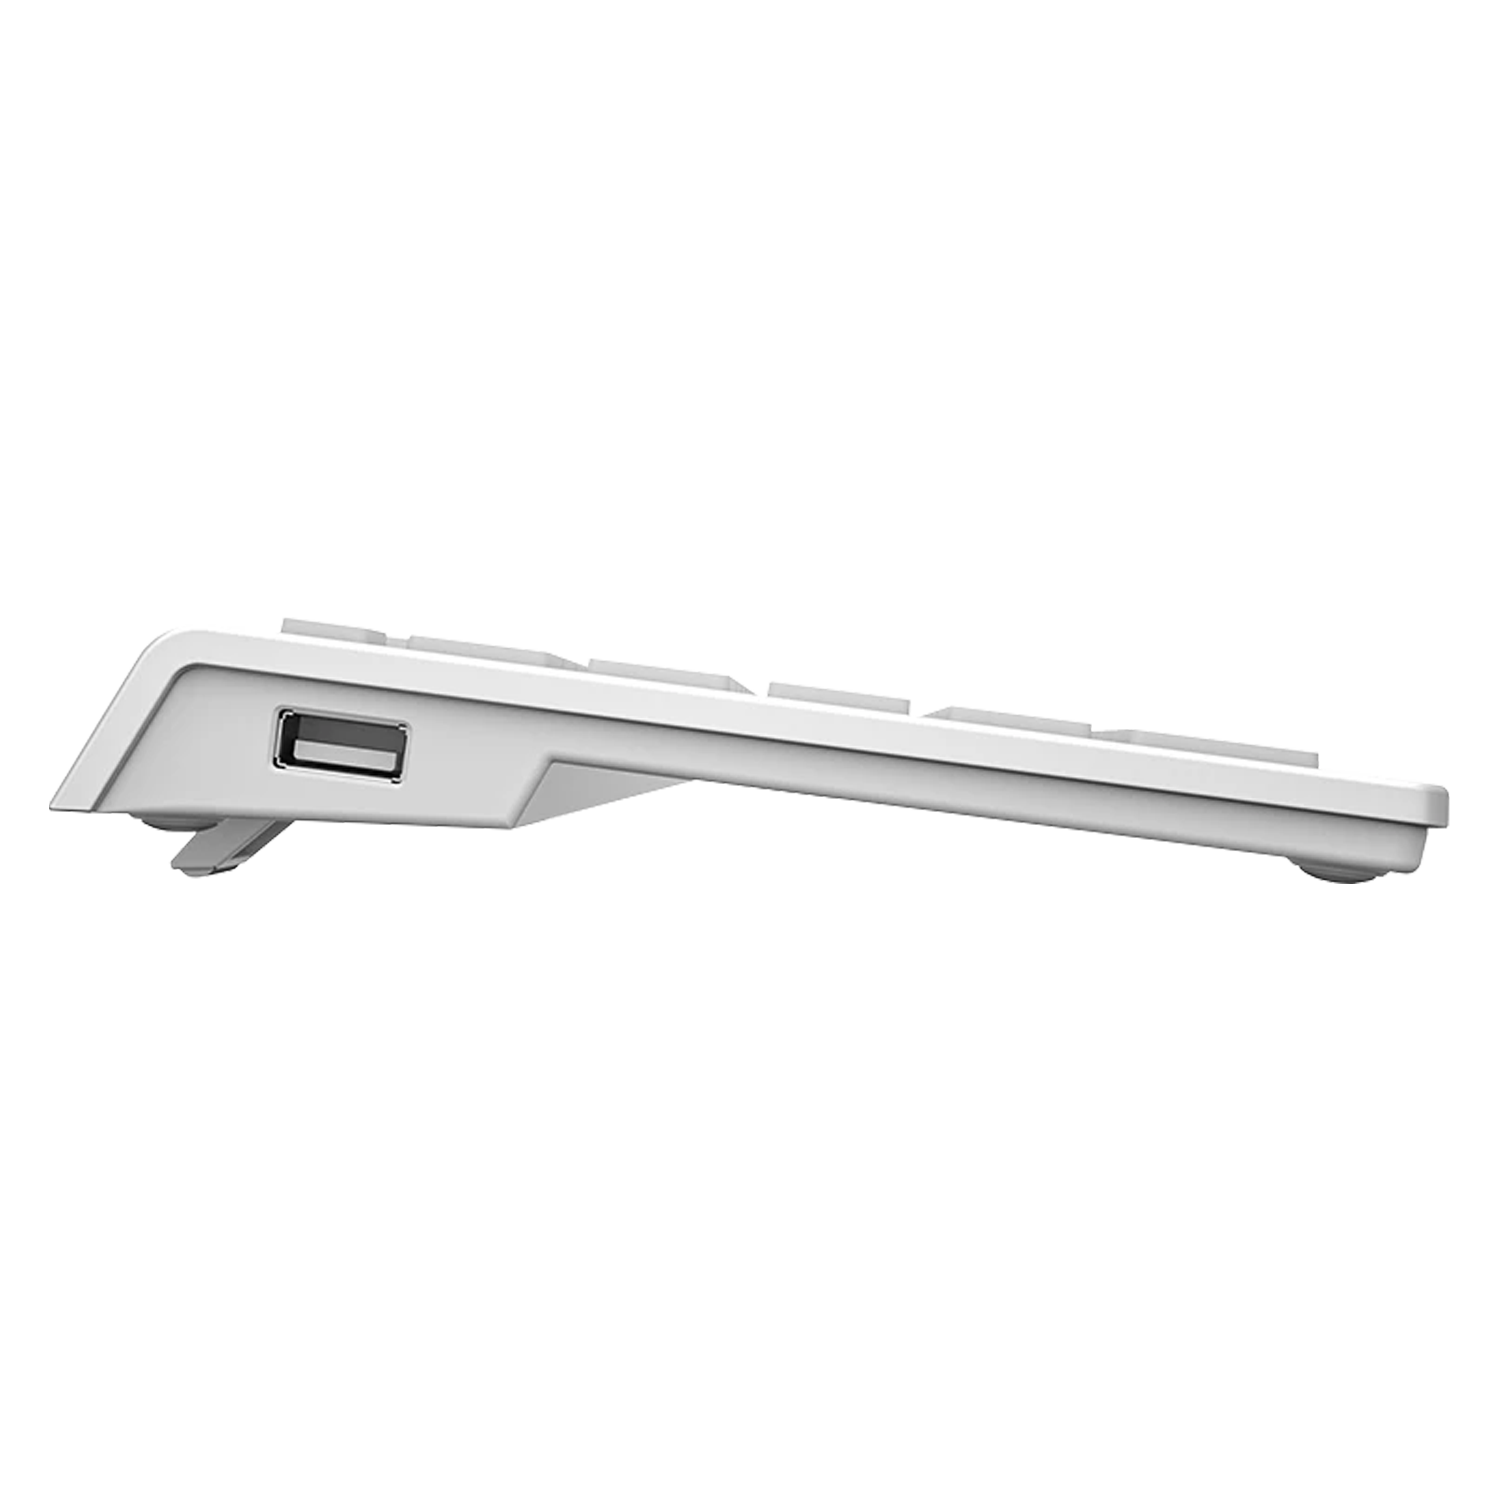 Teclado Mecânico Aigo V700 / USB Extension - Prata